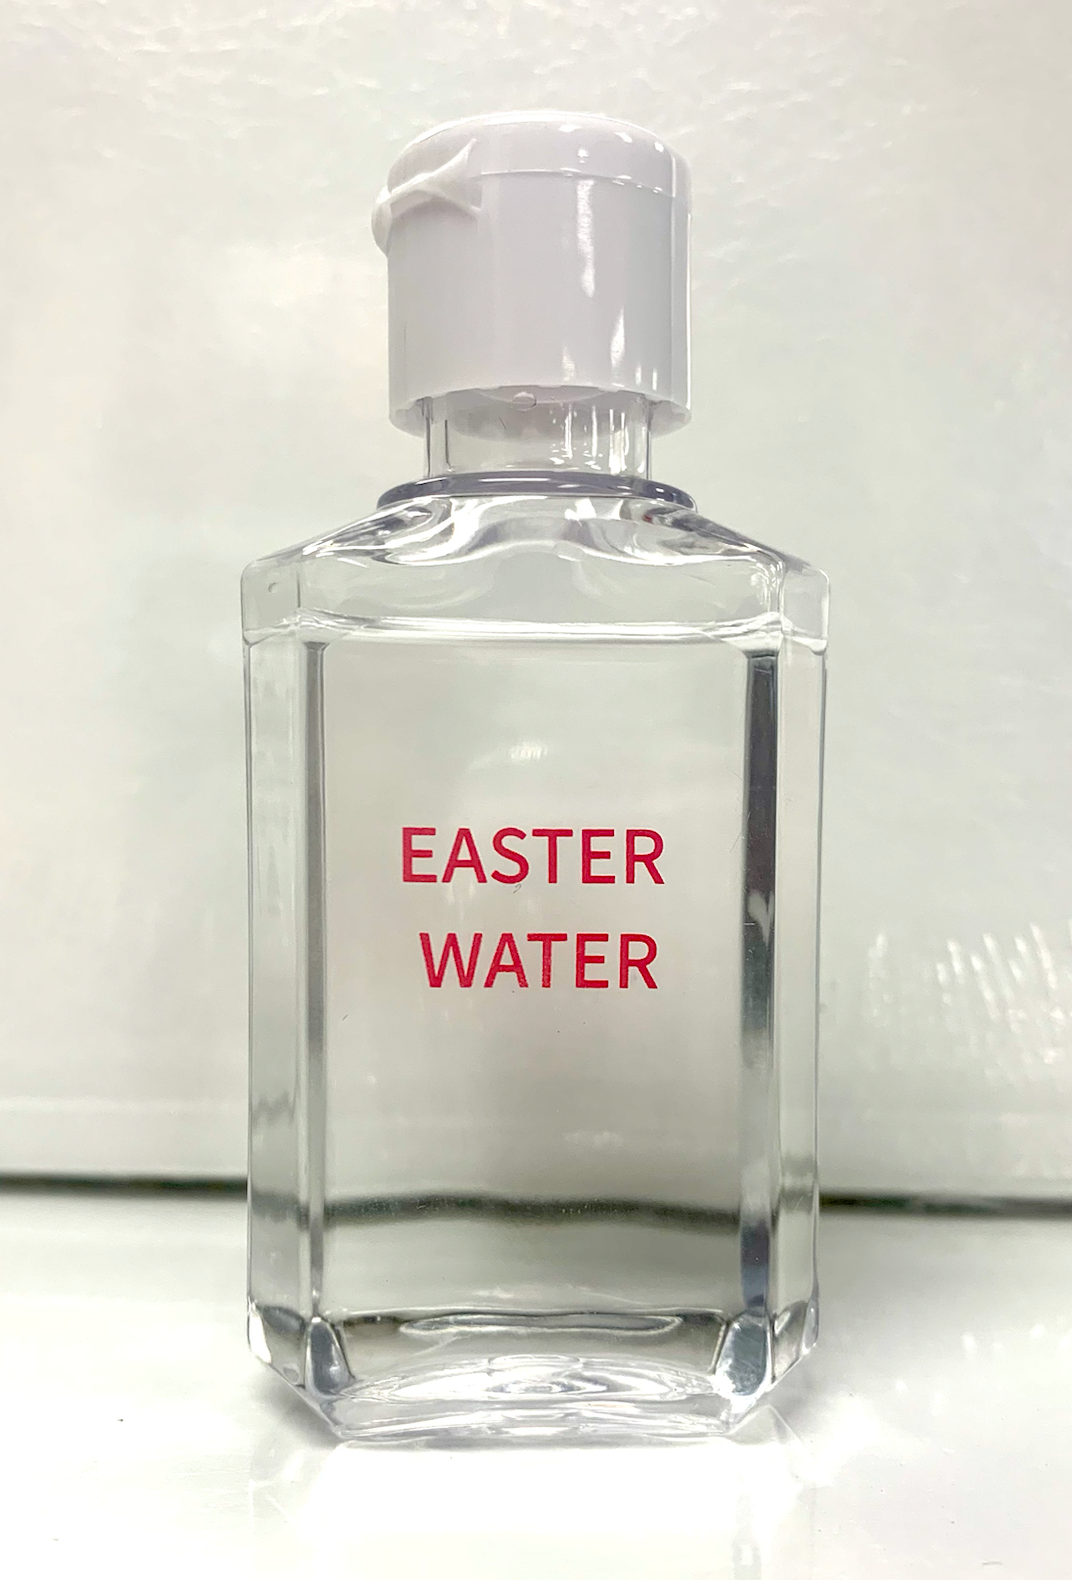 Easter Water Bottles - Chiarelli's Religious Goods & Church Supply  - Chiarelli's Religious Goods & Church Supply